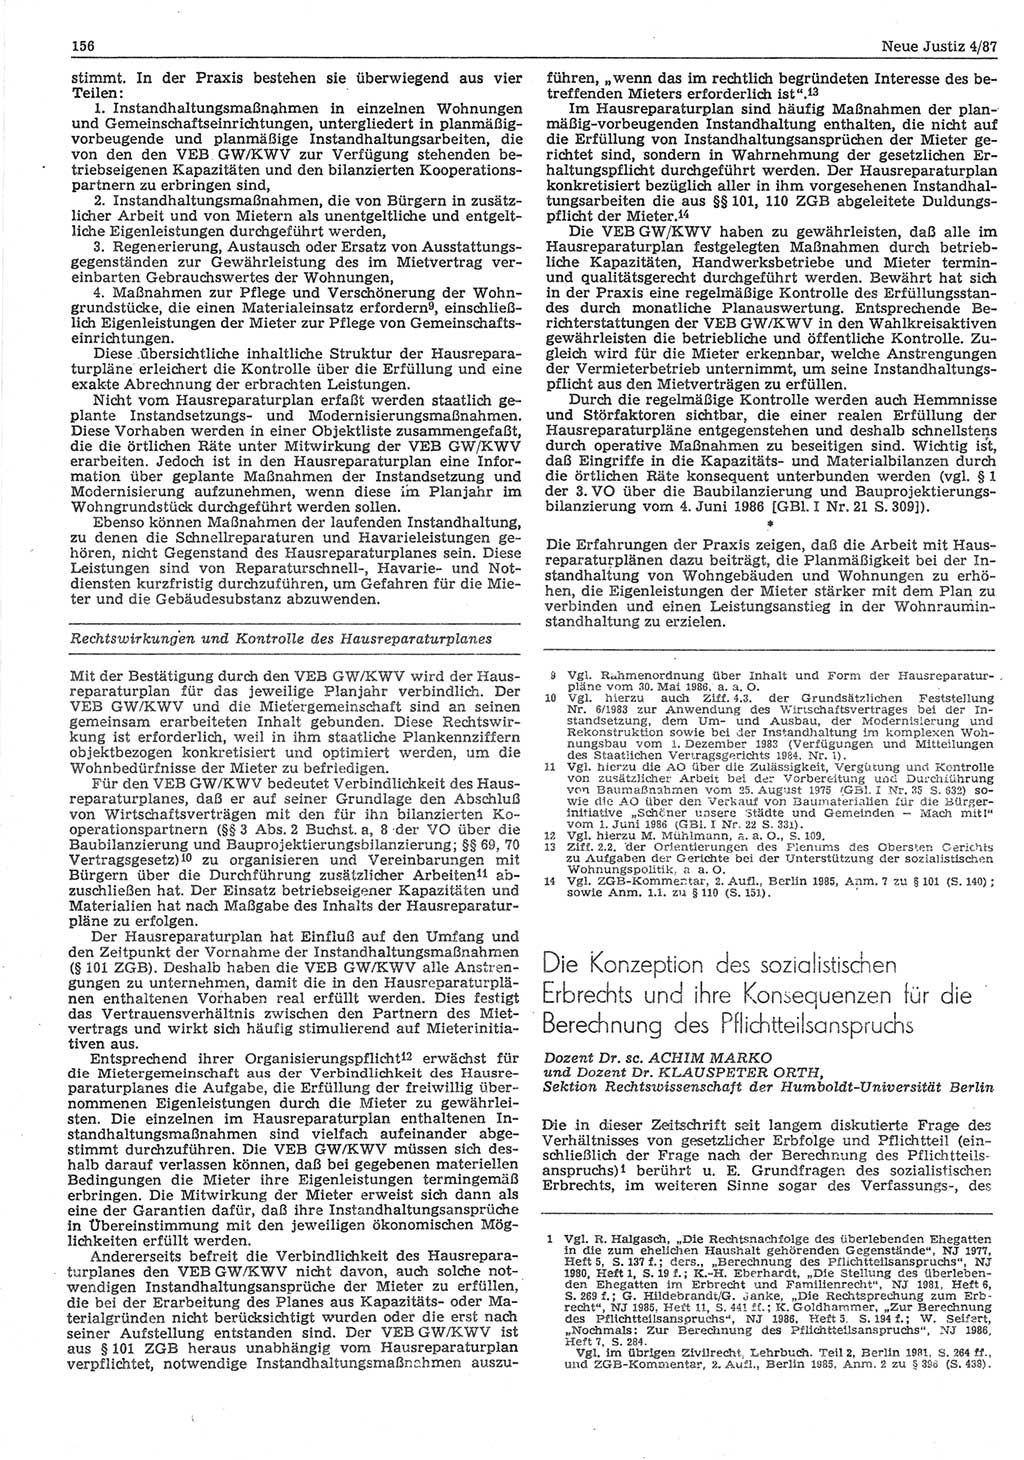 Neue Justiz (NJ), Zeitschrift für sozialistisches Recht und Gesetzlichkeit [Deutsche Demokratische Republik (DDR)], 41. Jahrgang 1987, Seite 156 (NJ DDR 1987, S. 156)